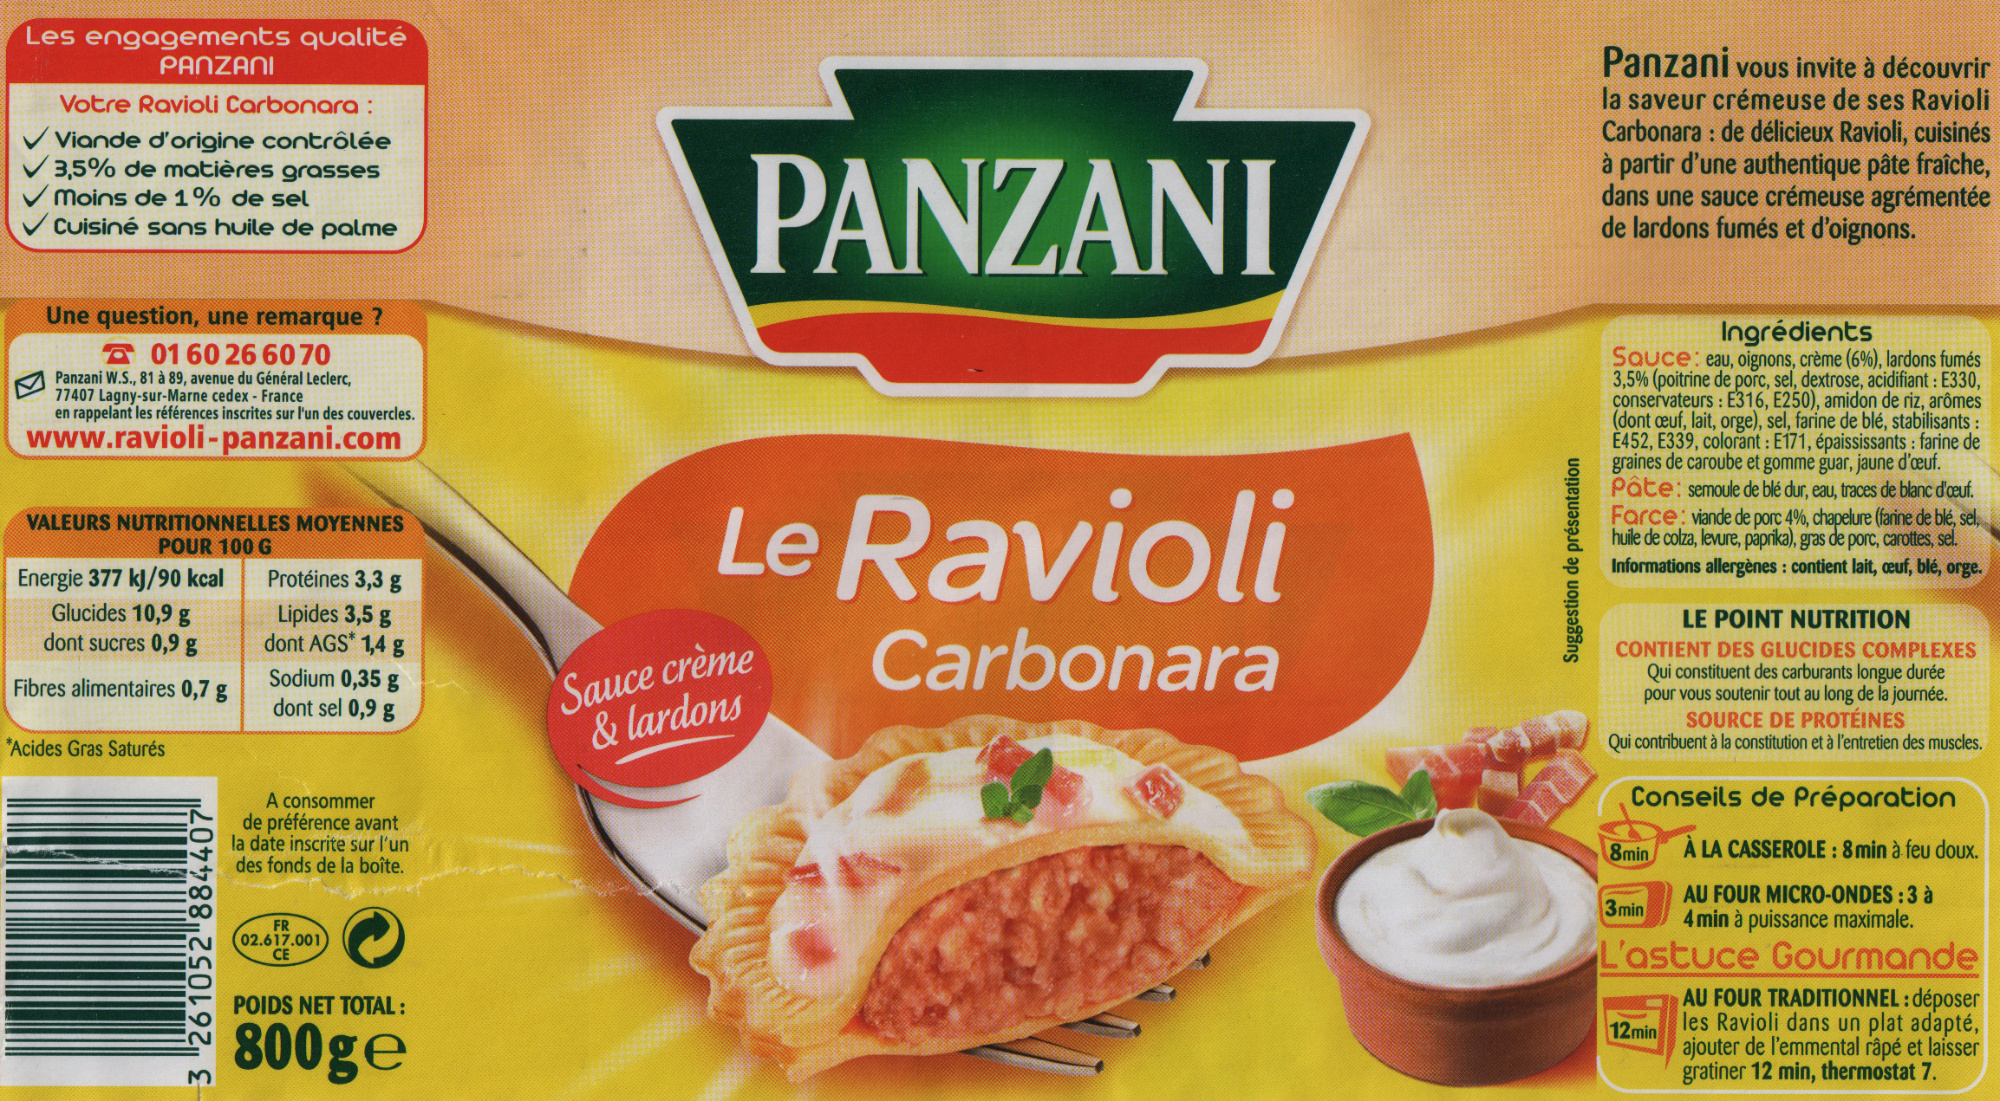 Le Ravioli Carbonara (Sauce crème & lardons) - Prodotto - fr